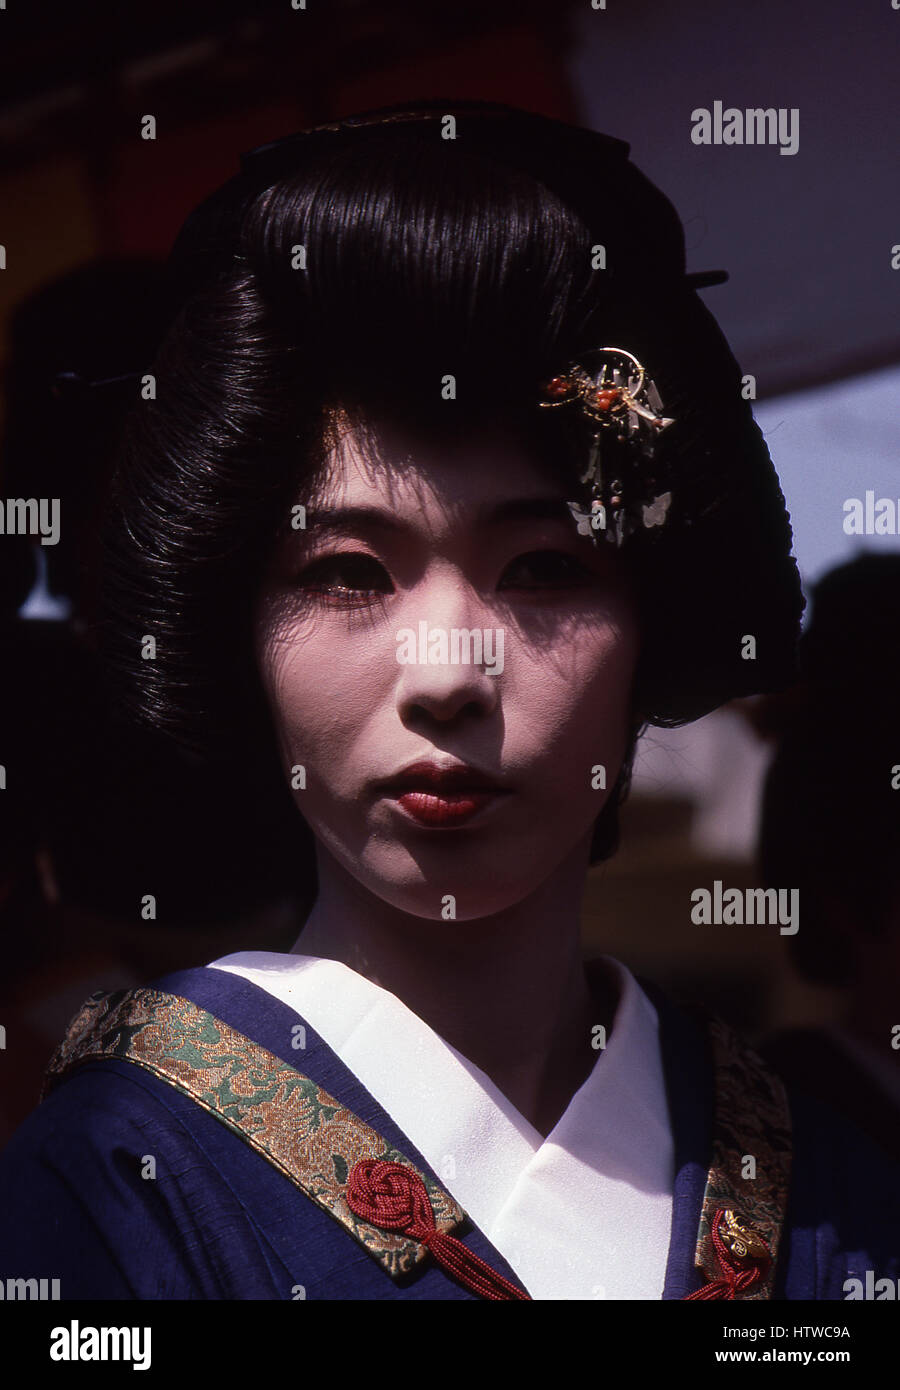 Geisha dans le quartier Asakusa de Tokyo, Japon. Le mot est composé de deux caractères kanji, (GEI) signifiant 'art' et (SHA) signifiant 'personne' ou 'drel'. L Banque D'Images